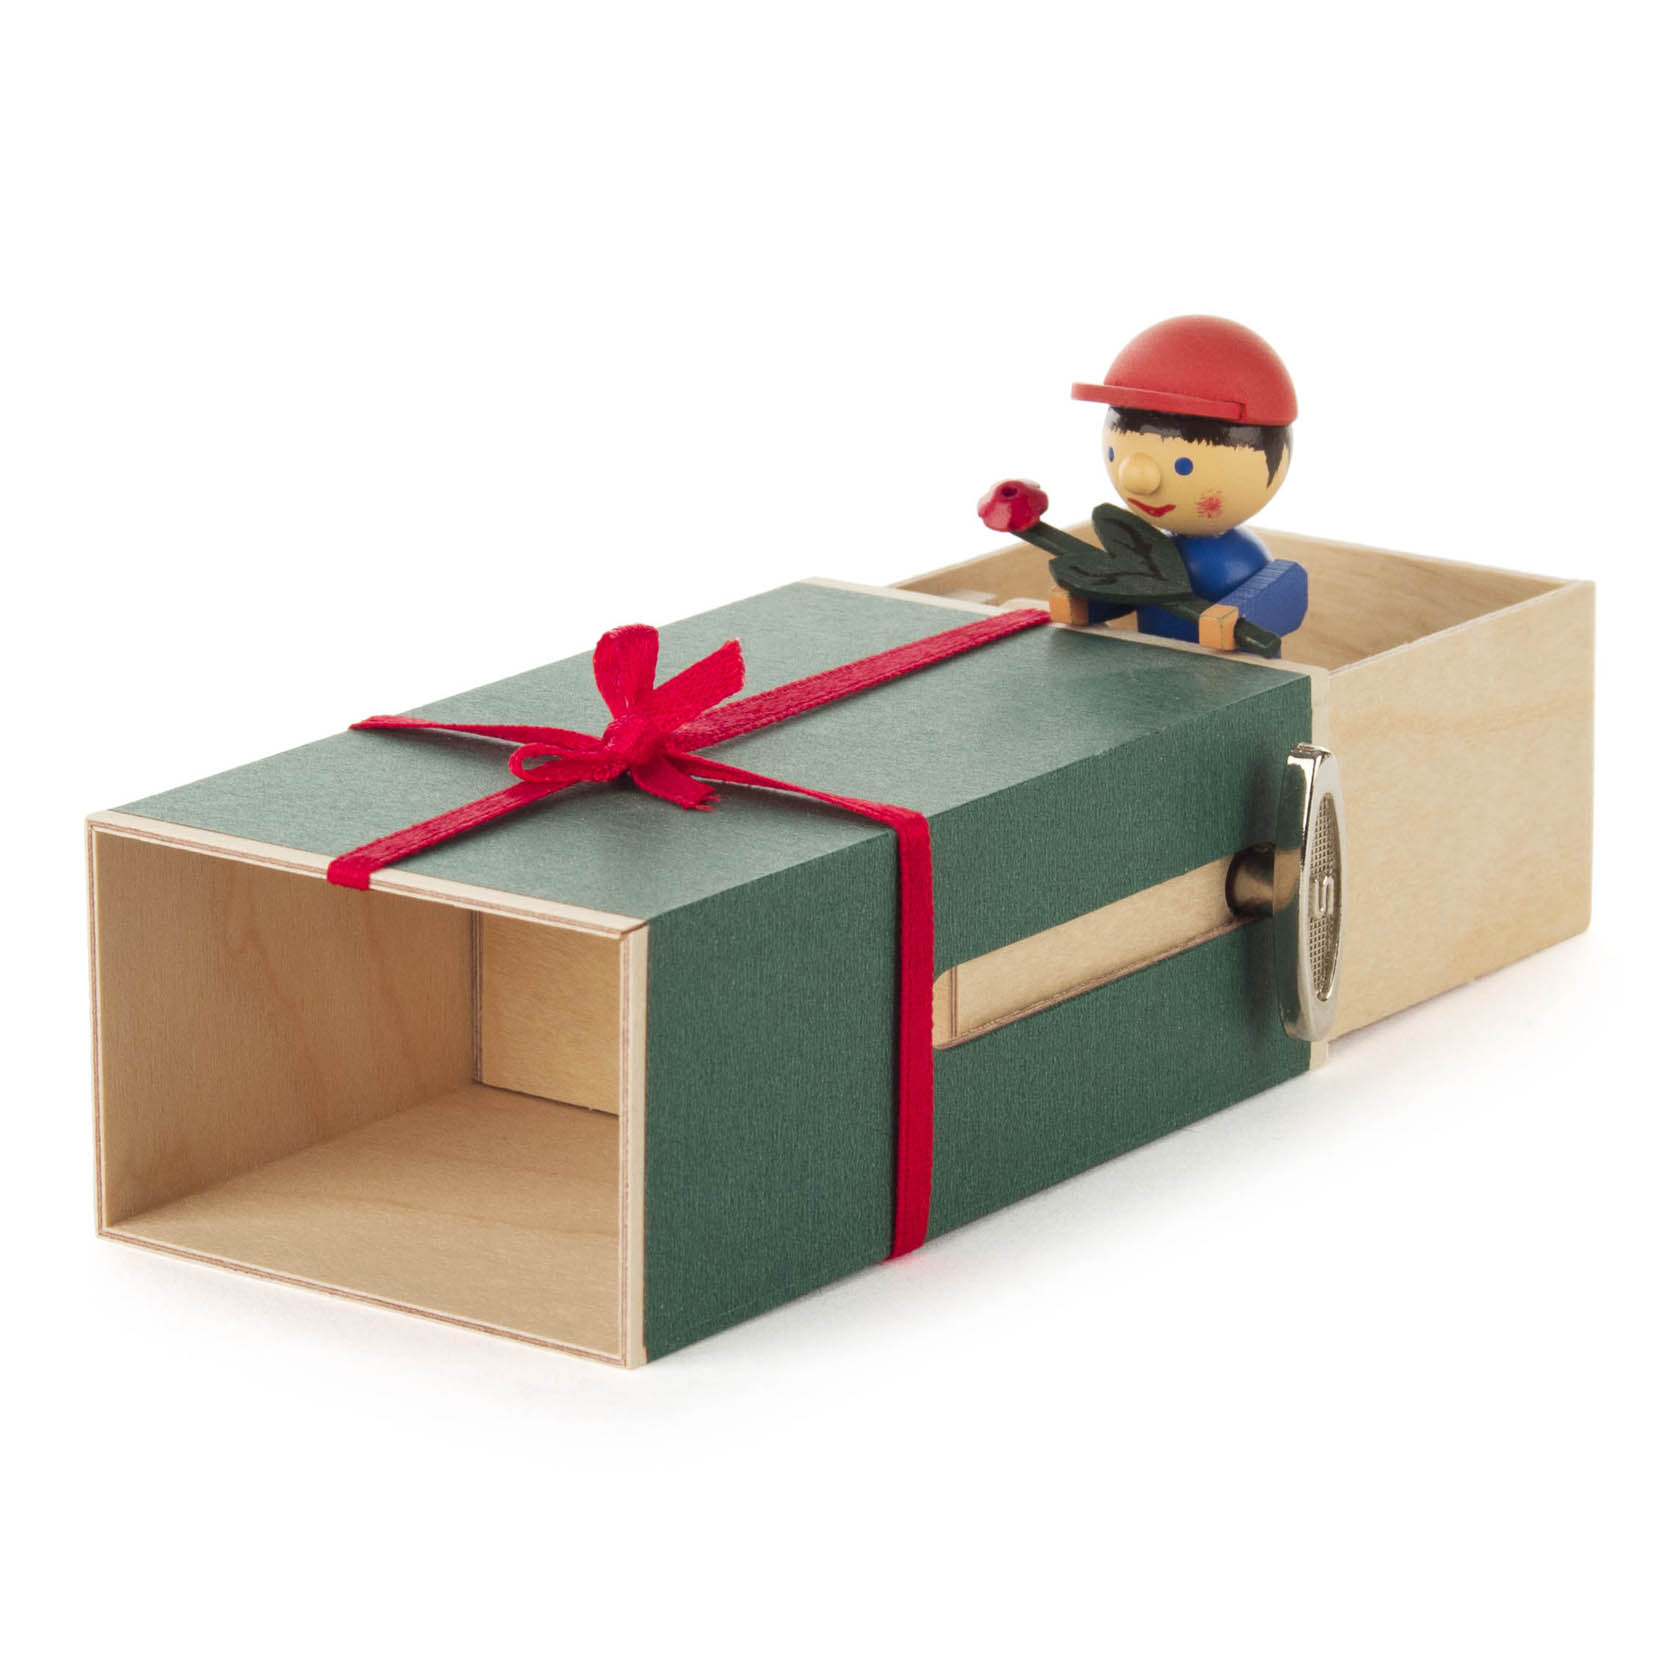 Schiebebox "Geschenke-Box" Junge mit Blume Melodie: It-s a small world